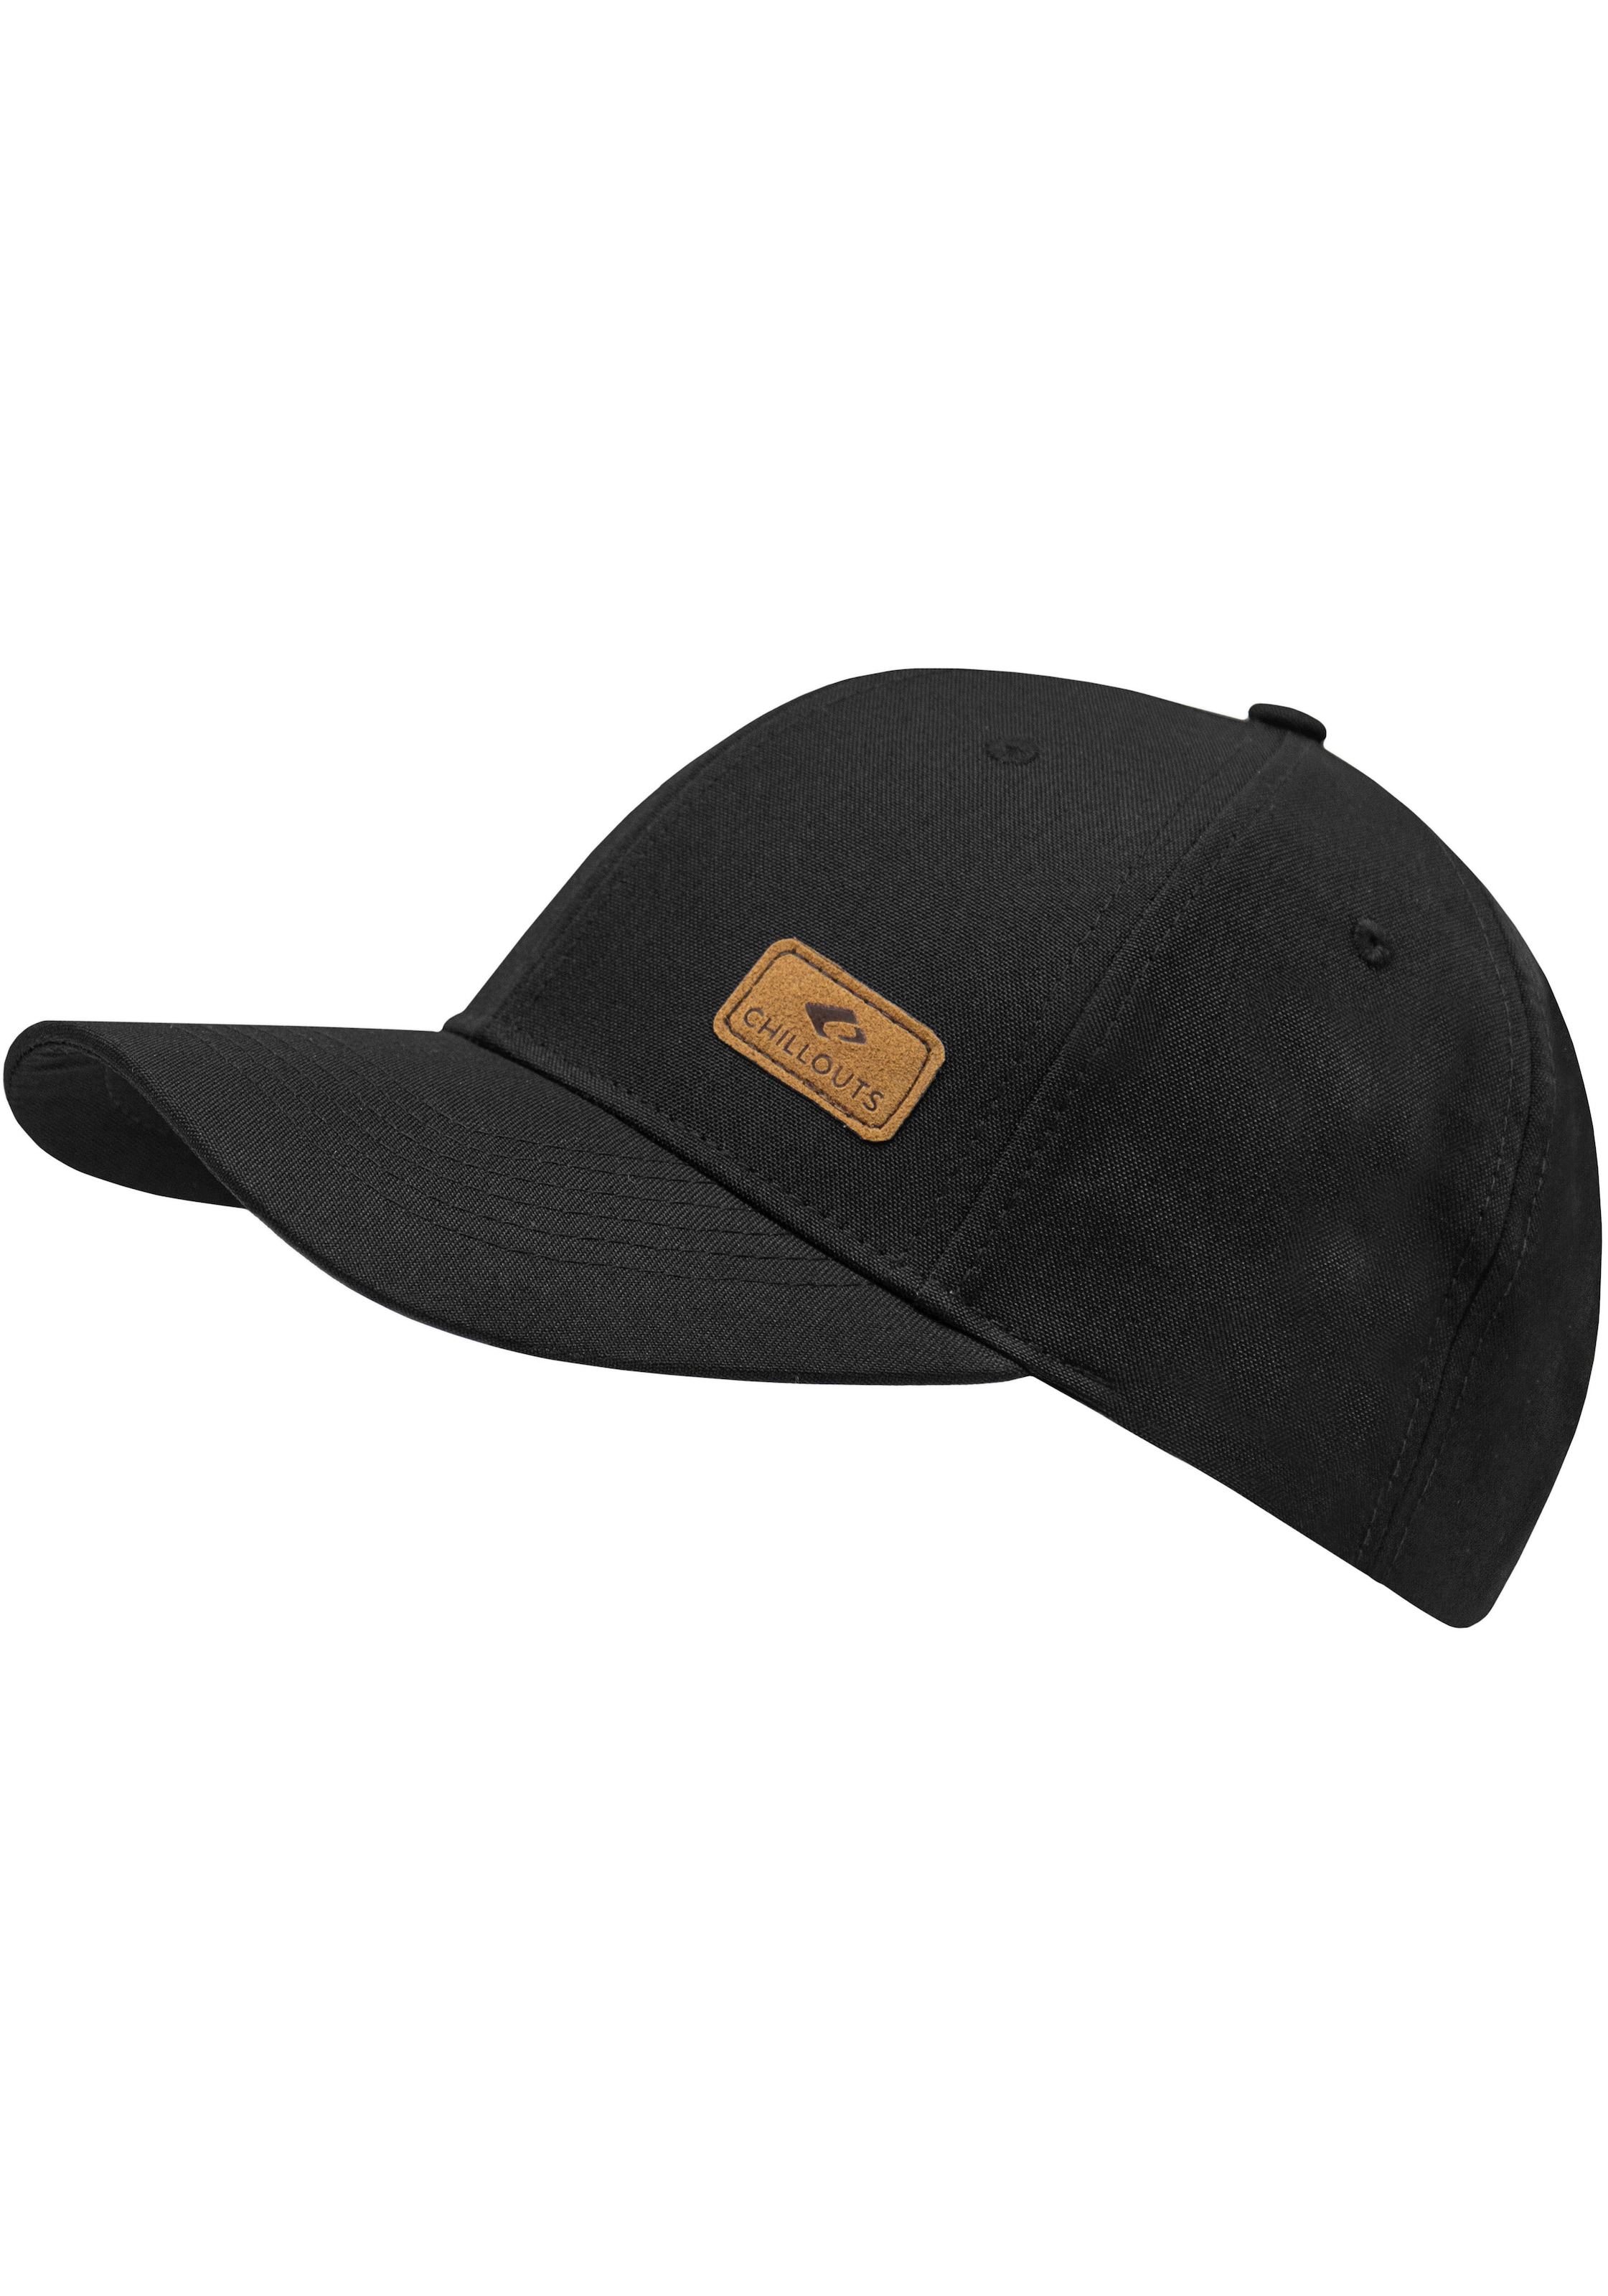 Online-Shop Hat in Cap, Size, Baseball Amadora verstellbar kaufen Optik, melierter chillouts One im